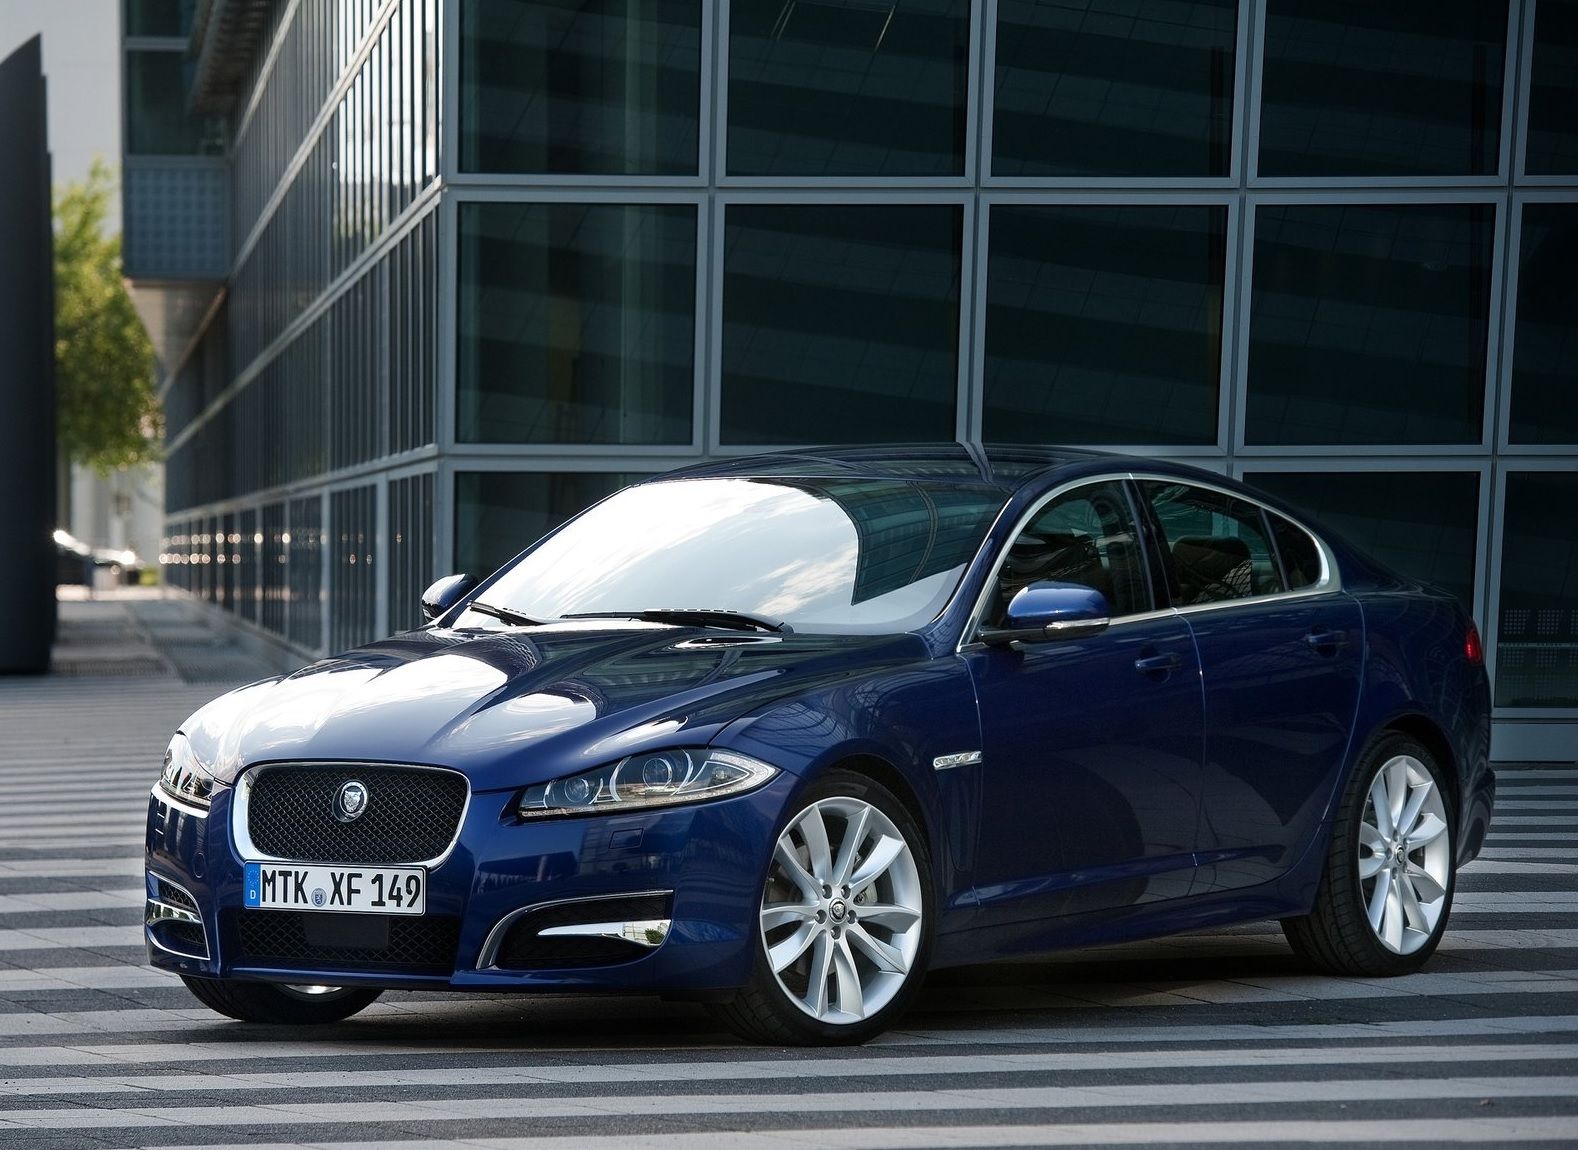 2012 Jaguar XF Blue Parked